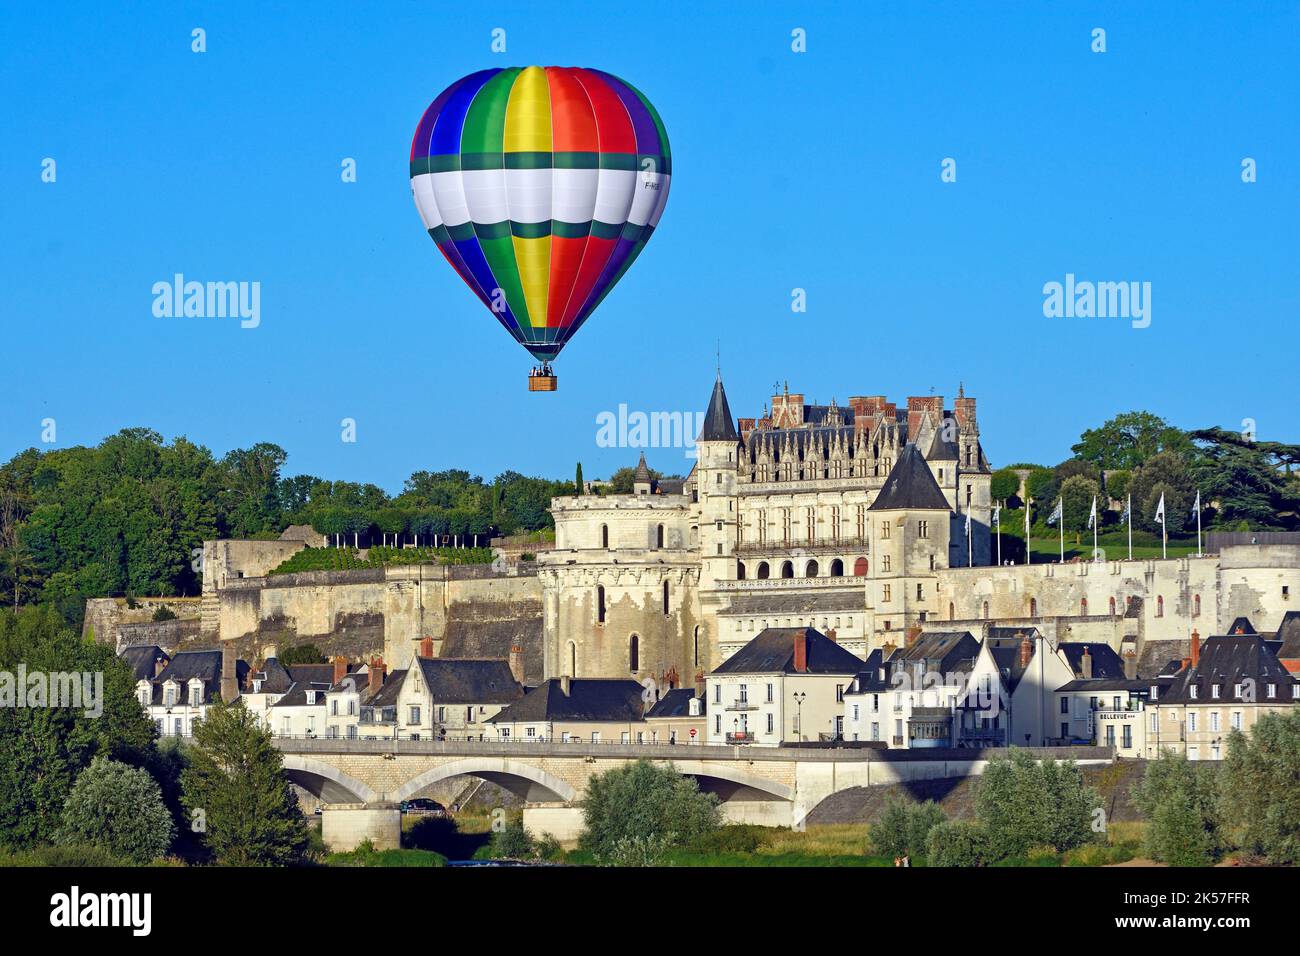 France, Indre-et-Loire, vallée de la Loire classée au patrimoine mondial de l'UNESCO, Amboise, château d'Amboise et ballon à air chaud Banque D'Images